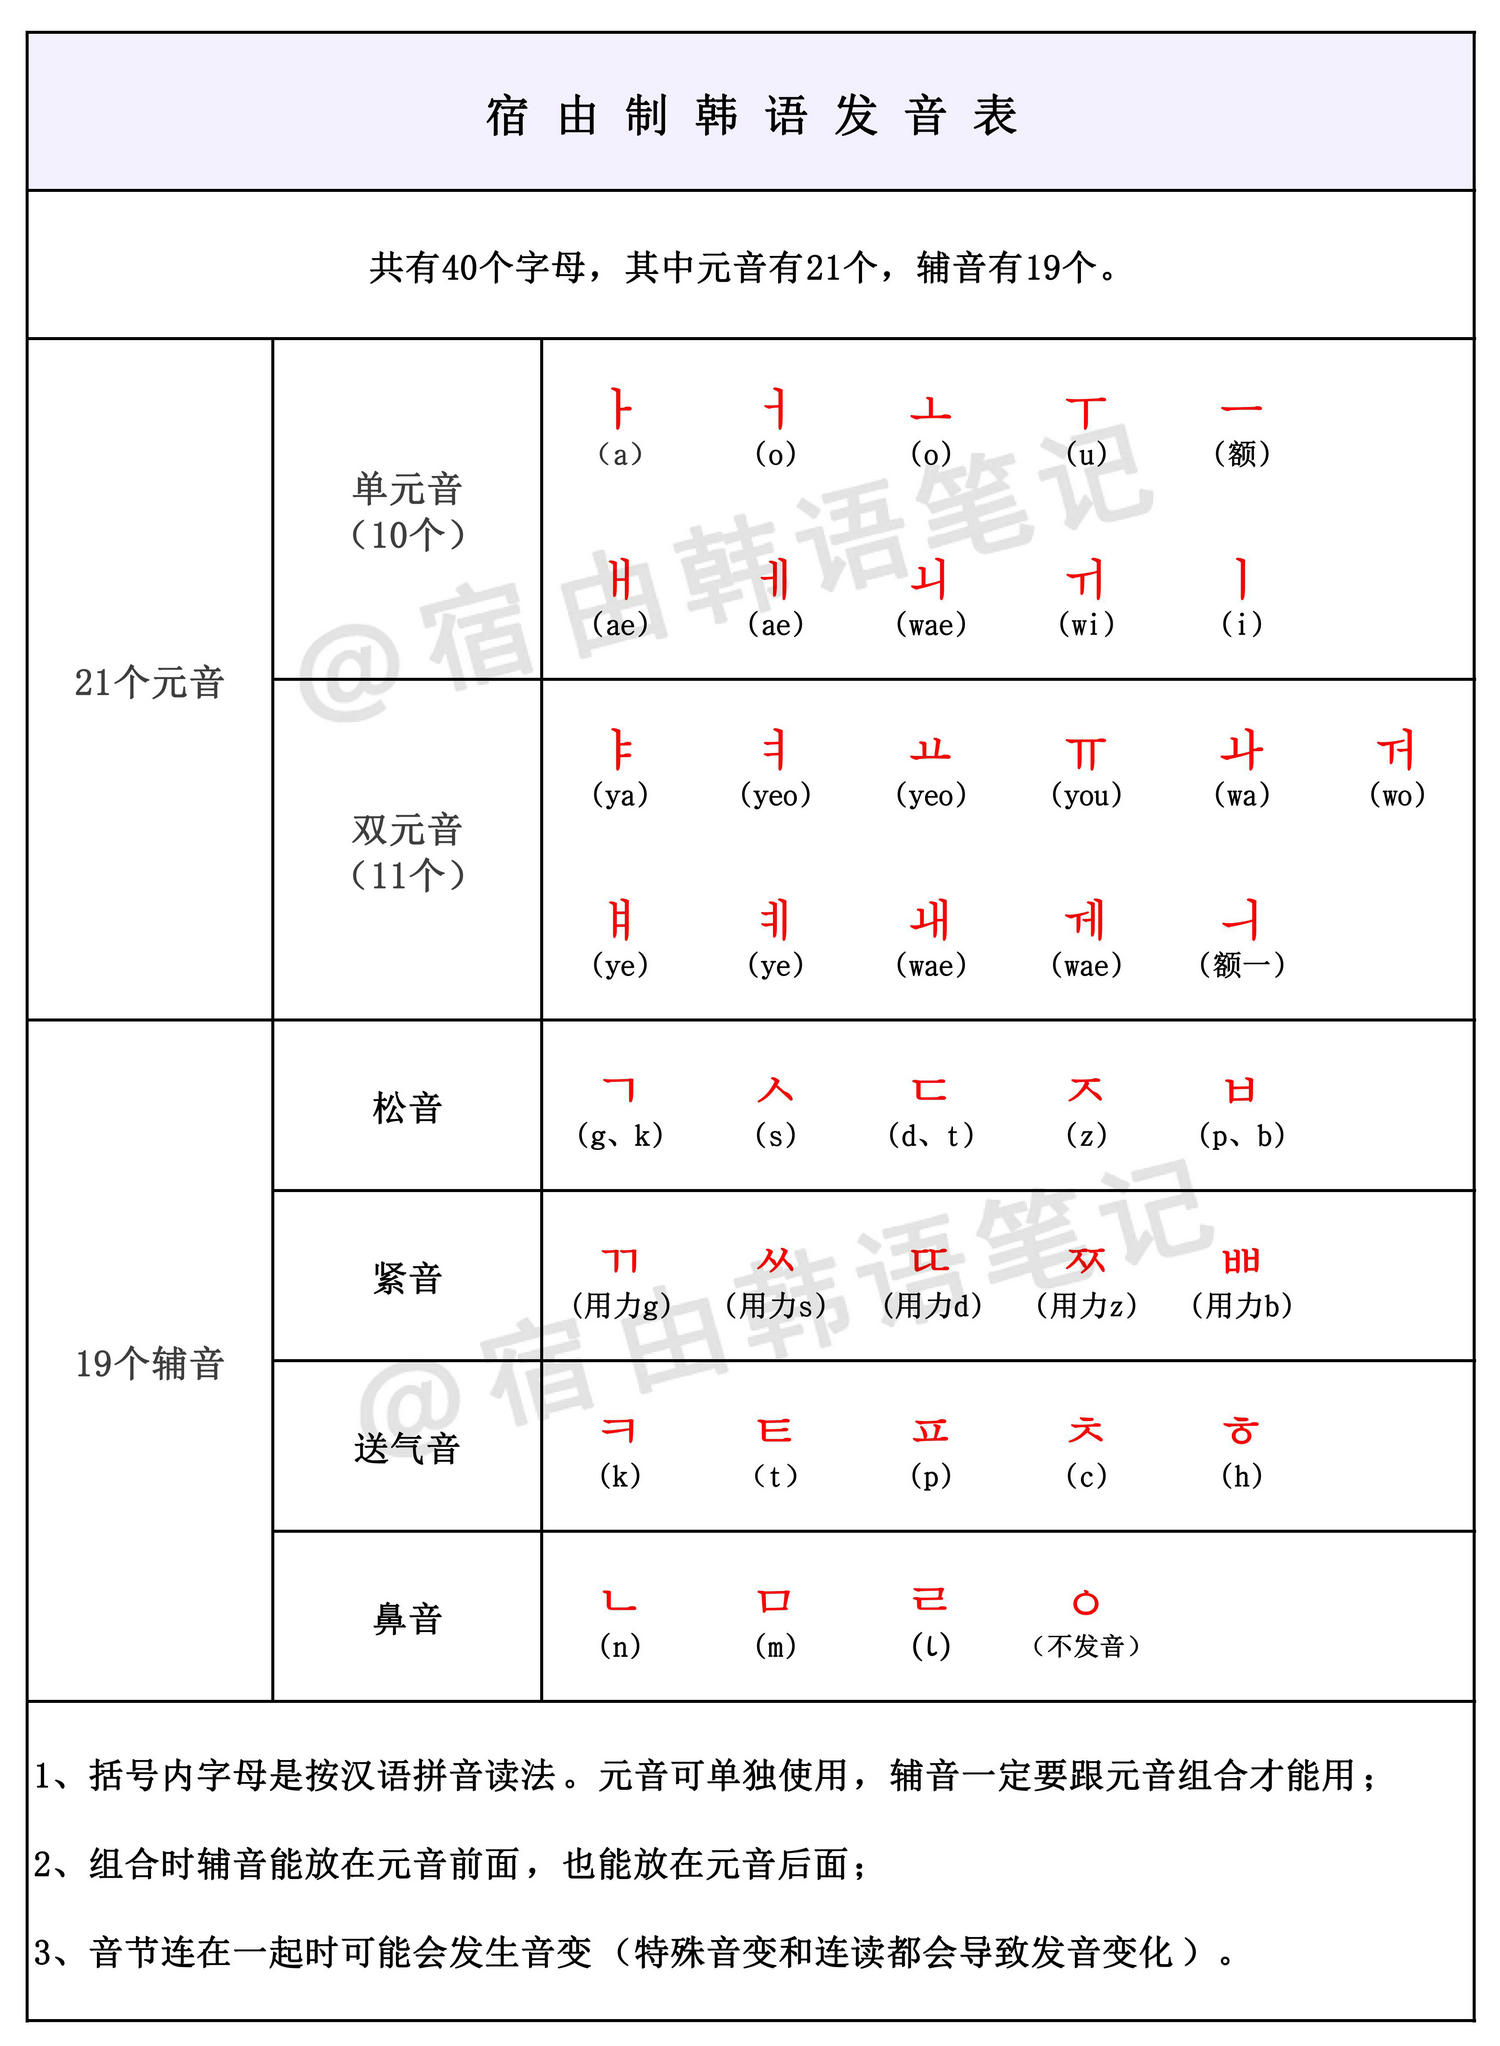 像学英文那样,我们要先去了解音标,就是韩语的发音元素